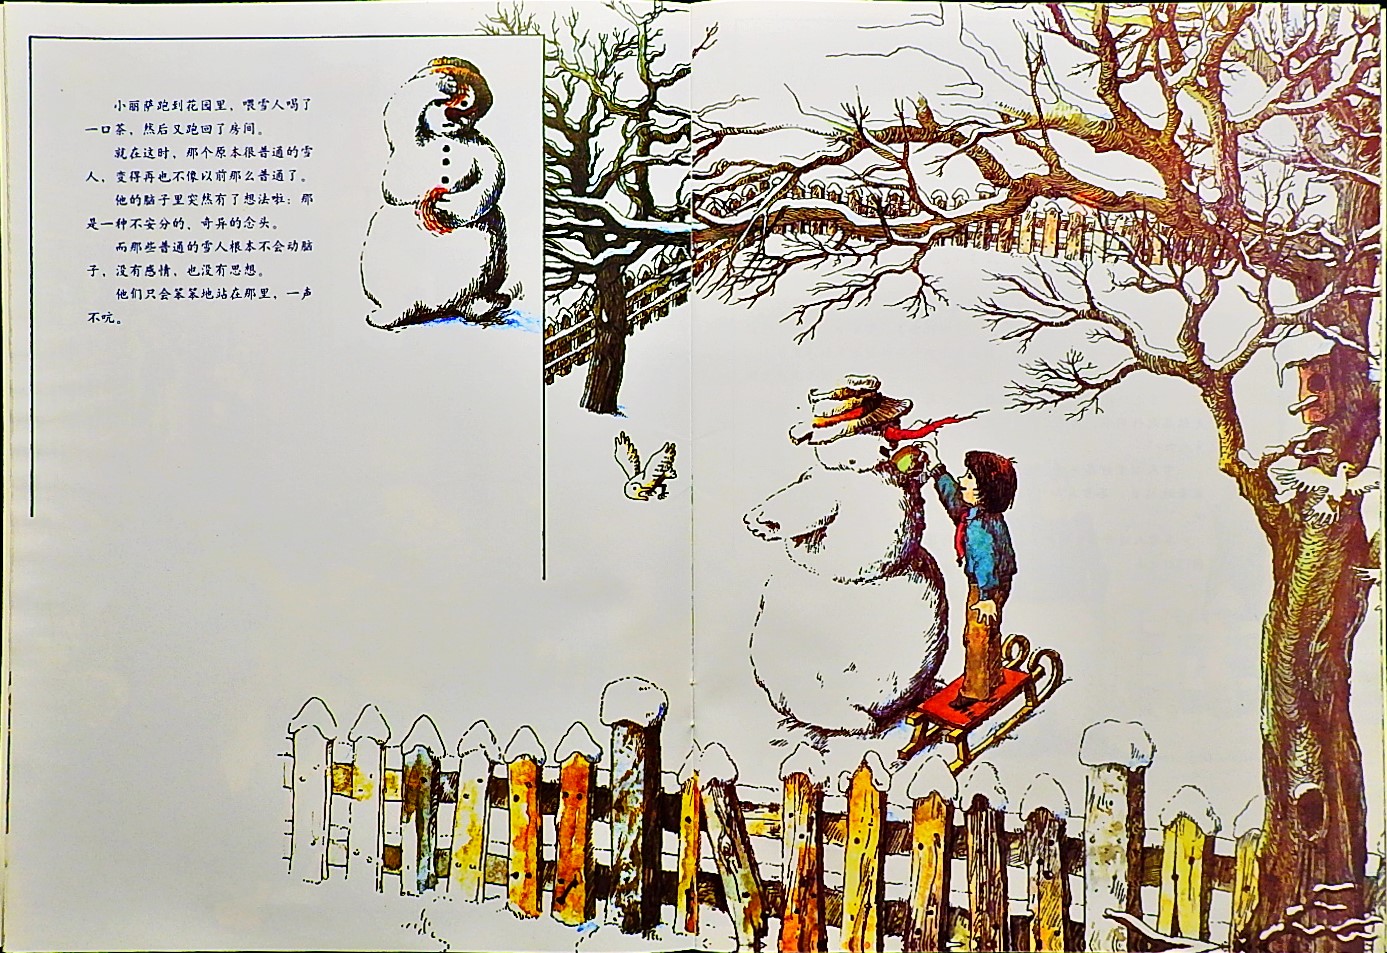 雪人历险记 (05),绘本,绘本故事,绘本阅读,故事书,童书,图画书,课外阅读